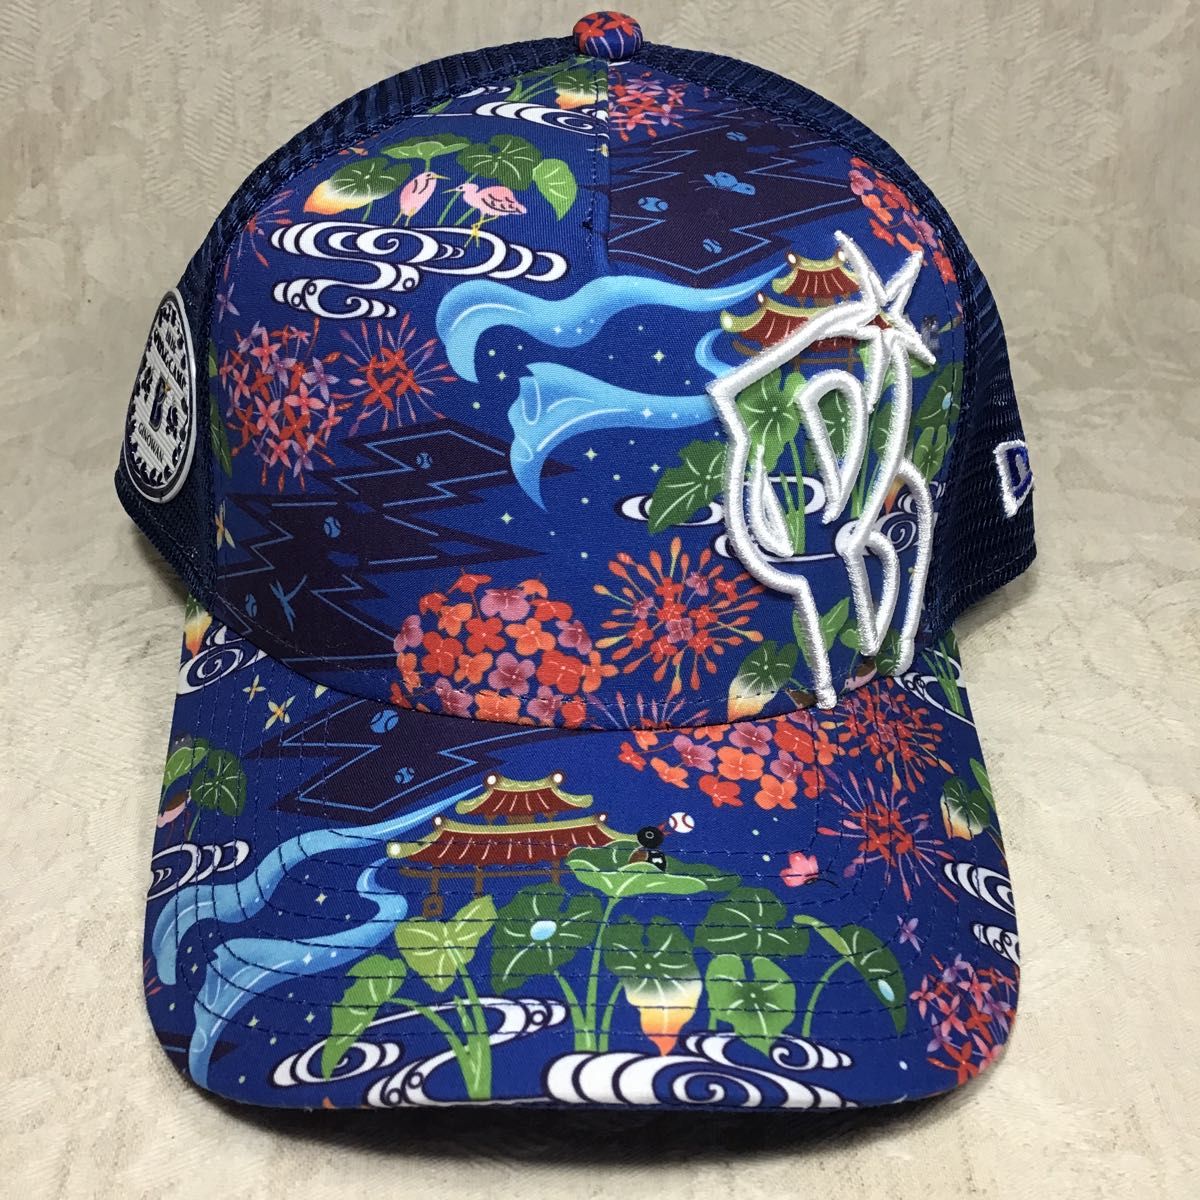 未使用 横浜DeNAベイスターズ 2020年 沖縄 宜野湾キャンプ NEW ERA キャップ 帽子